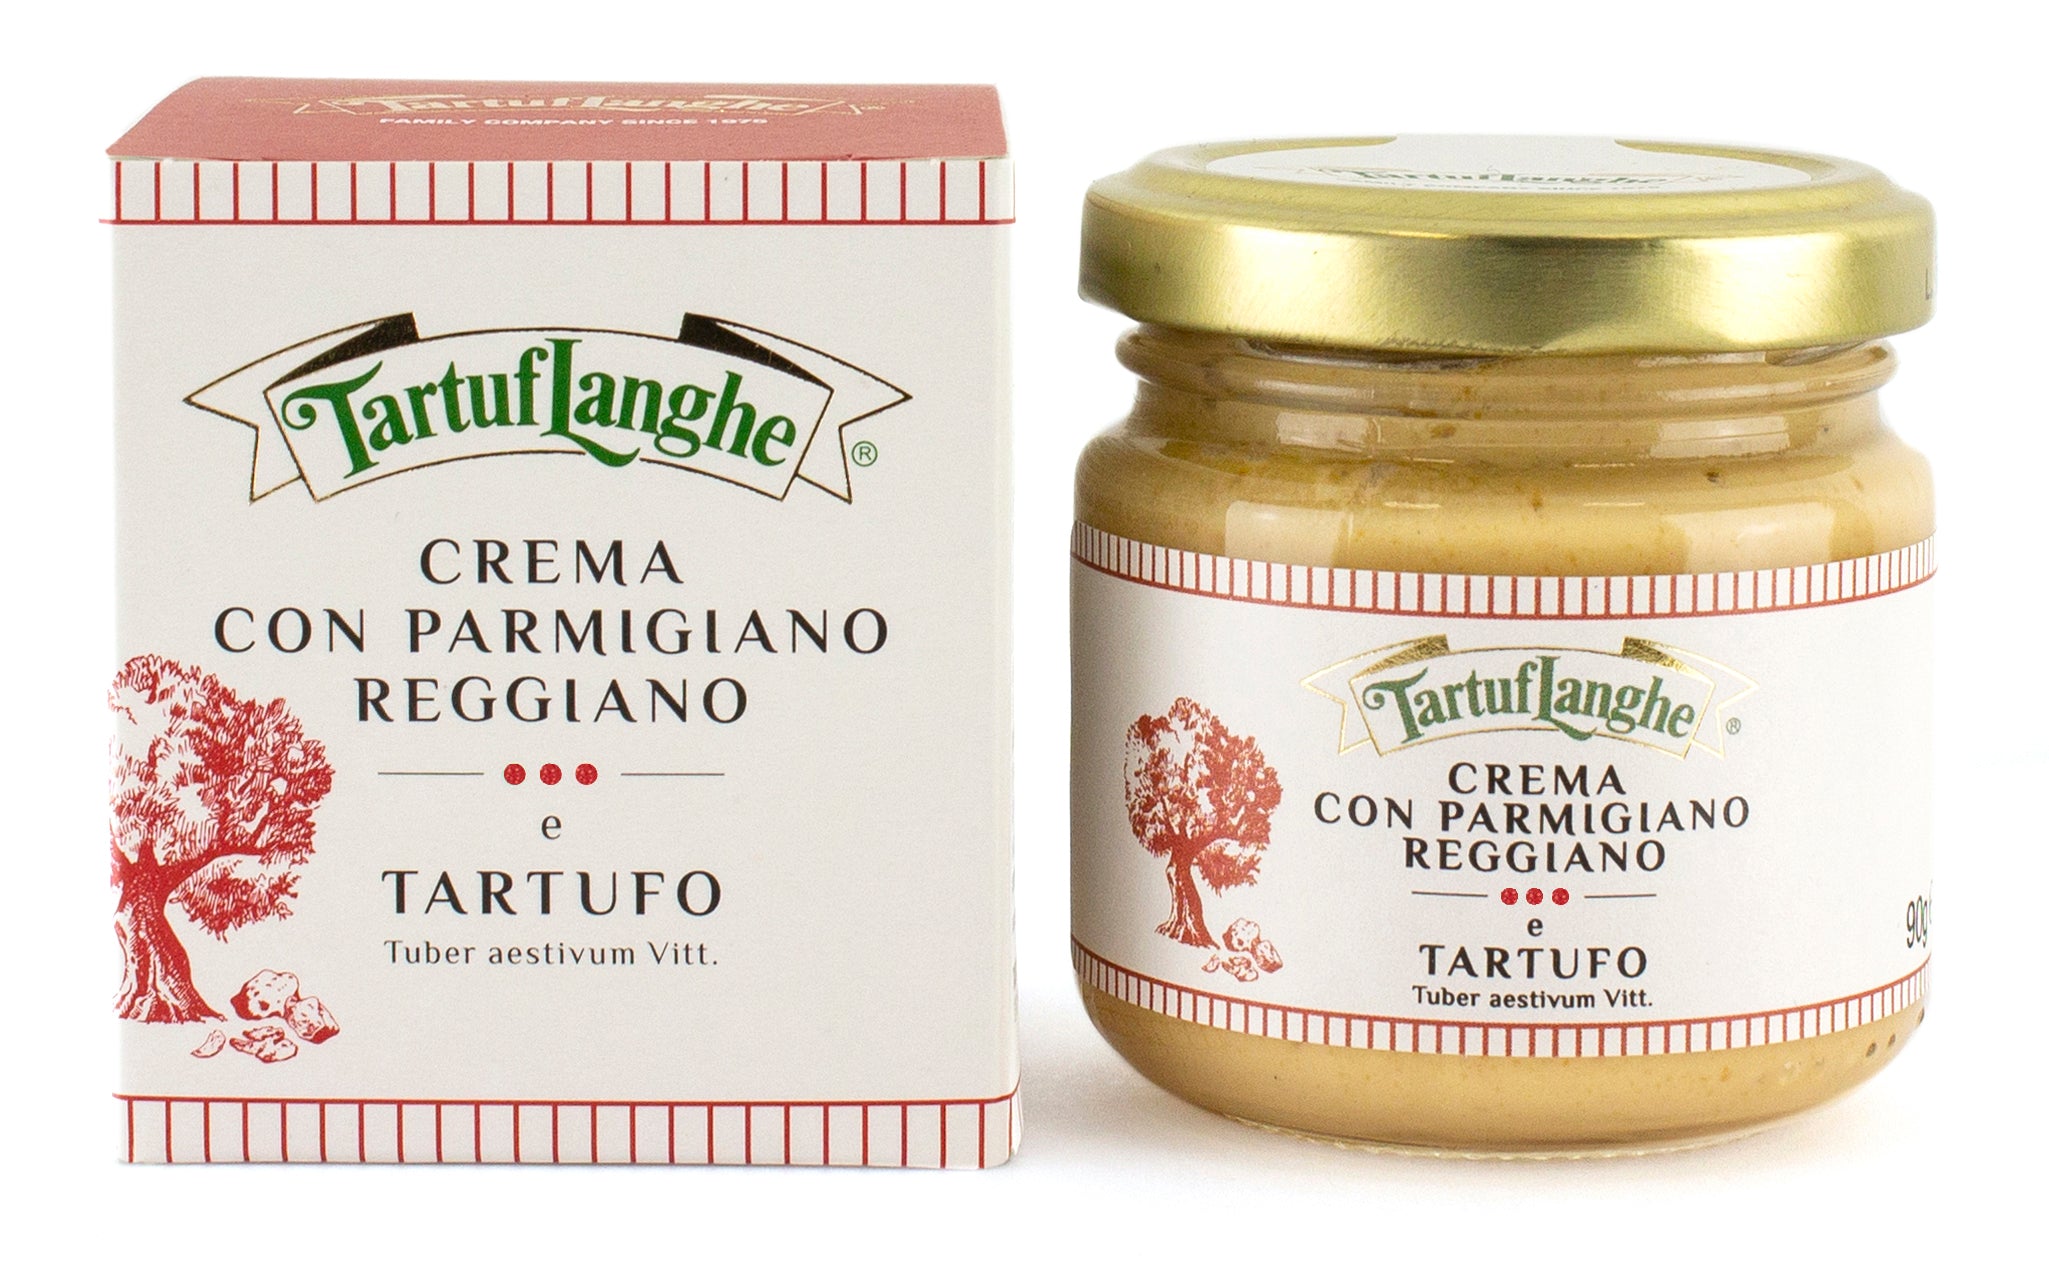 Tartuflanghe Parmigiano Reggiano Cream with Truffle